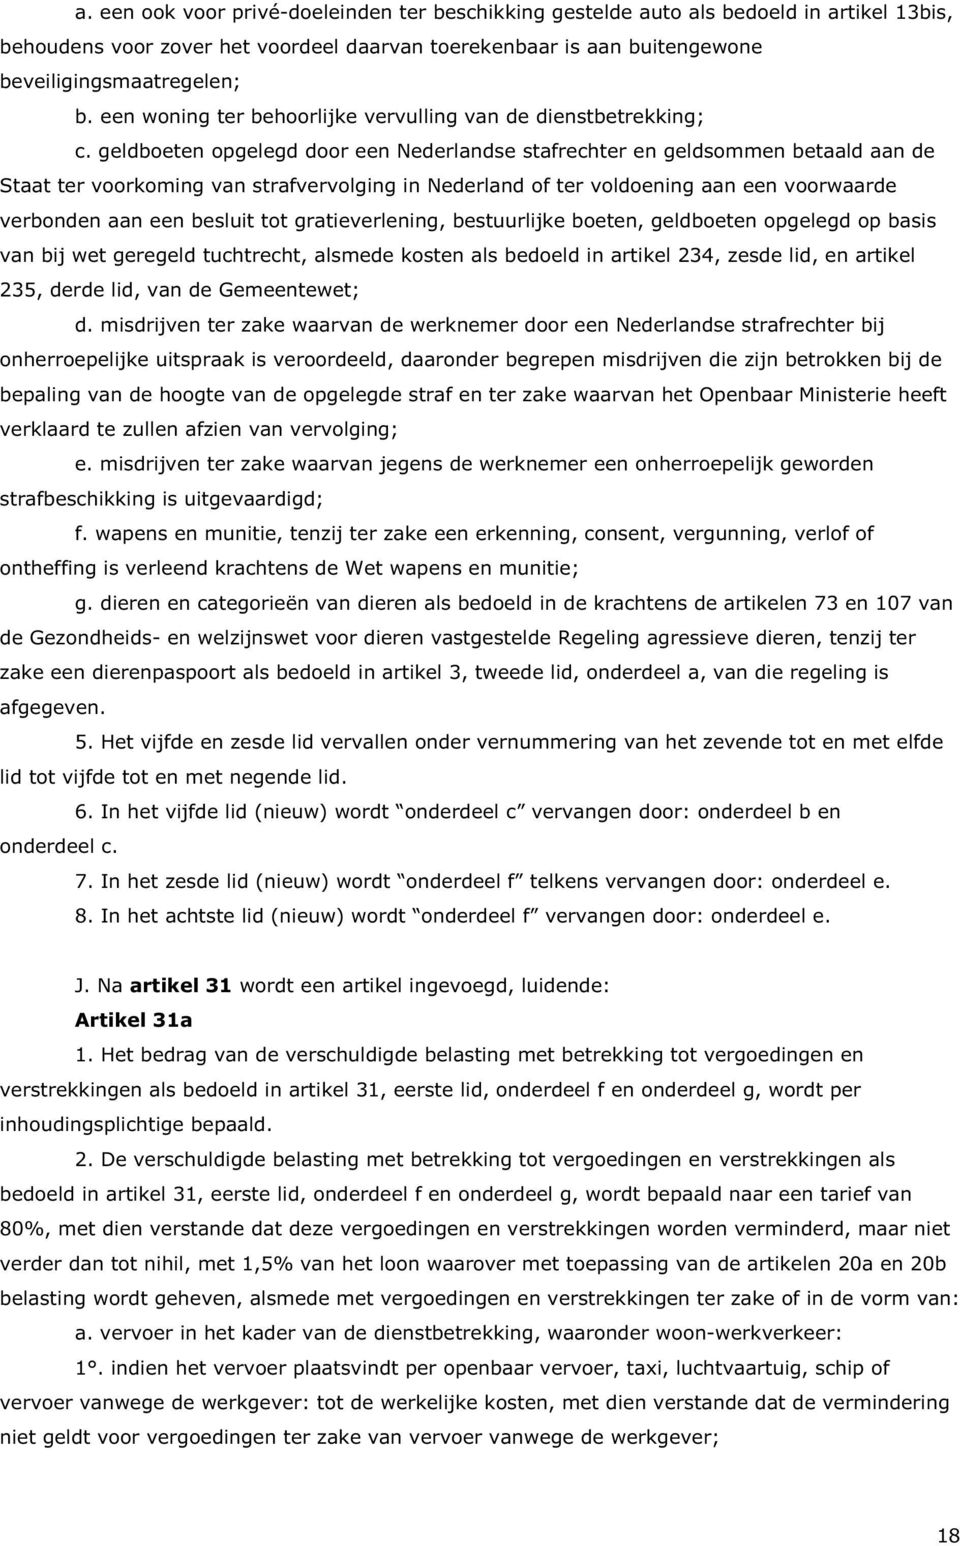 geldboeten opgelegd door een Nederlandse stafrechter en geldsommen betaald aan de Staat ter voorkoming van strafvervolging in Nederland of ter voldoening aan een voorwaarde verbonden aan een besluit